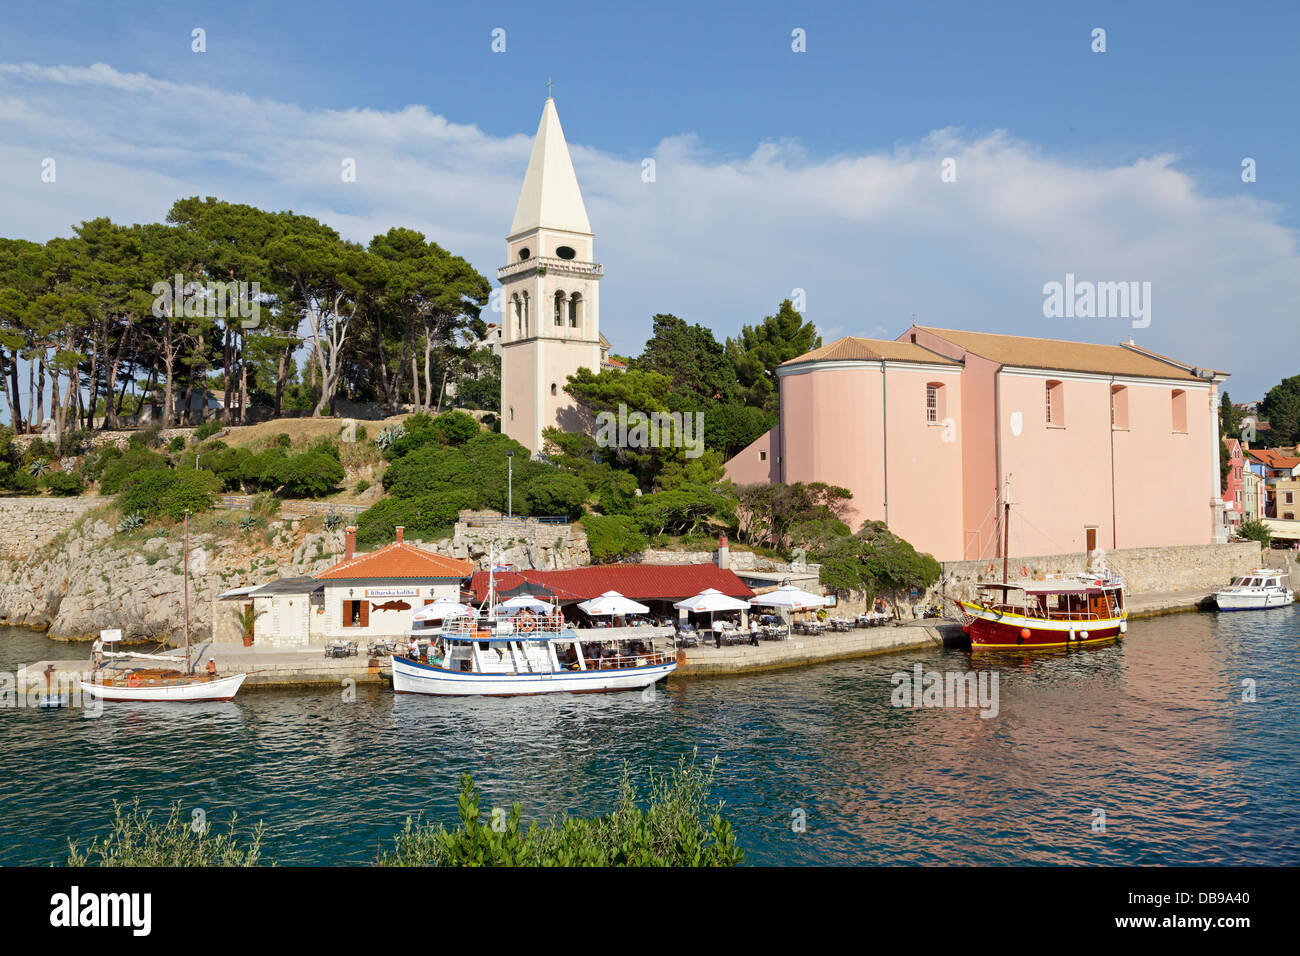 Eglise de Saint Antonius, Veli Losinj, Losinj Island, golf de Kvarner, Croatie Banque D'Images